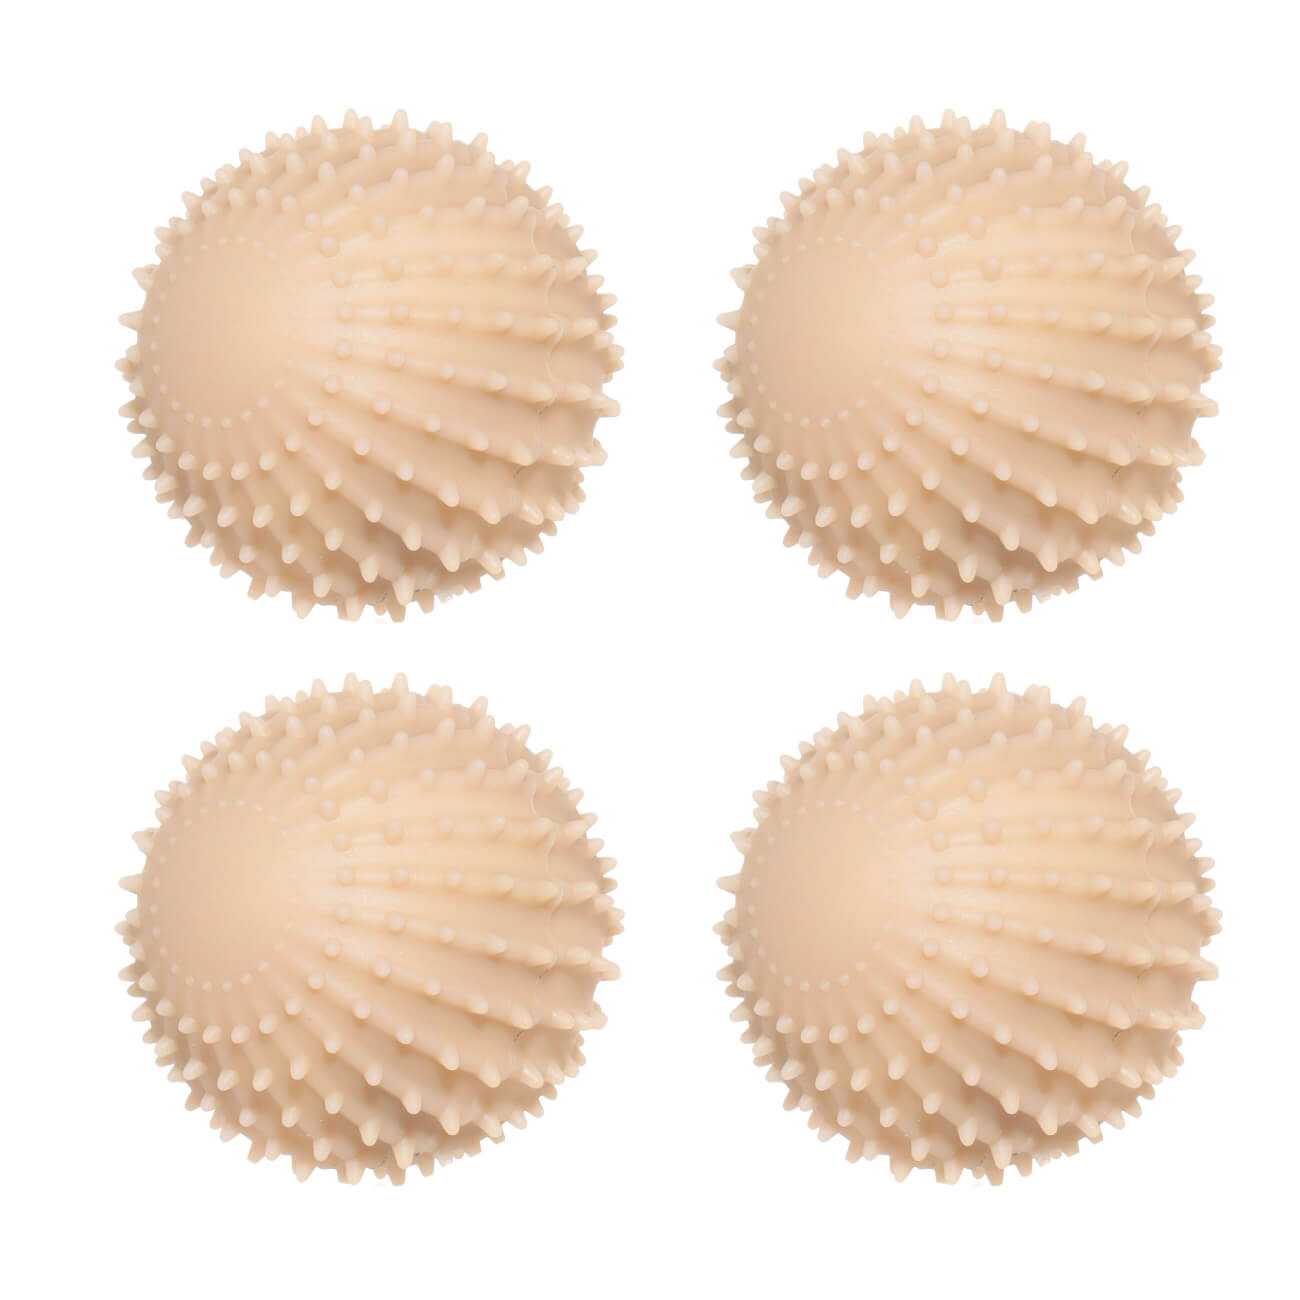 Шарик для стирки, 6 см, 4 шт, ПВХ, бежевый, Круг, Washing ball kuchenland шарик для стирки 9 см пвх серый ежик washing ball